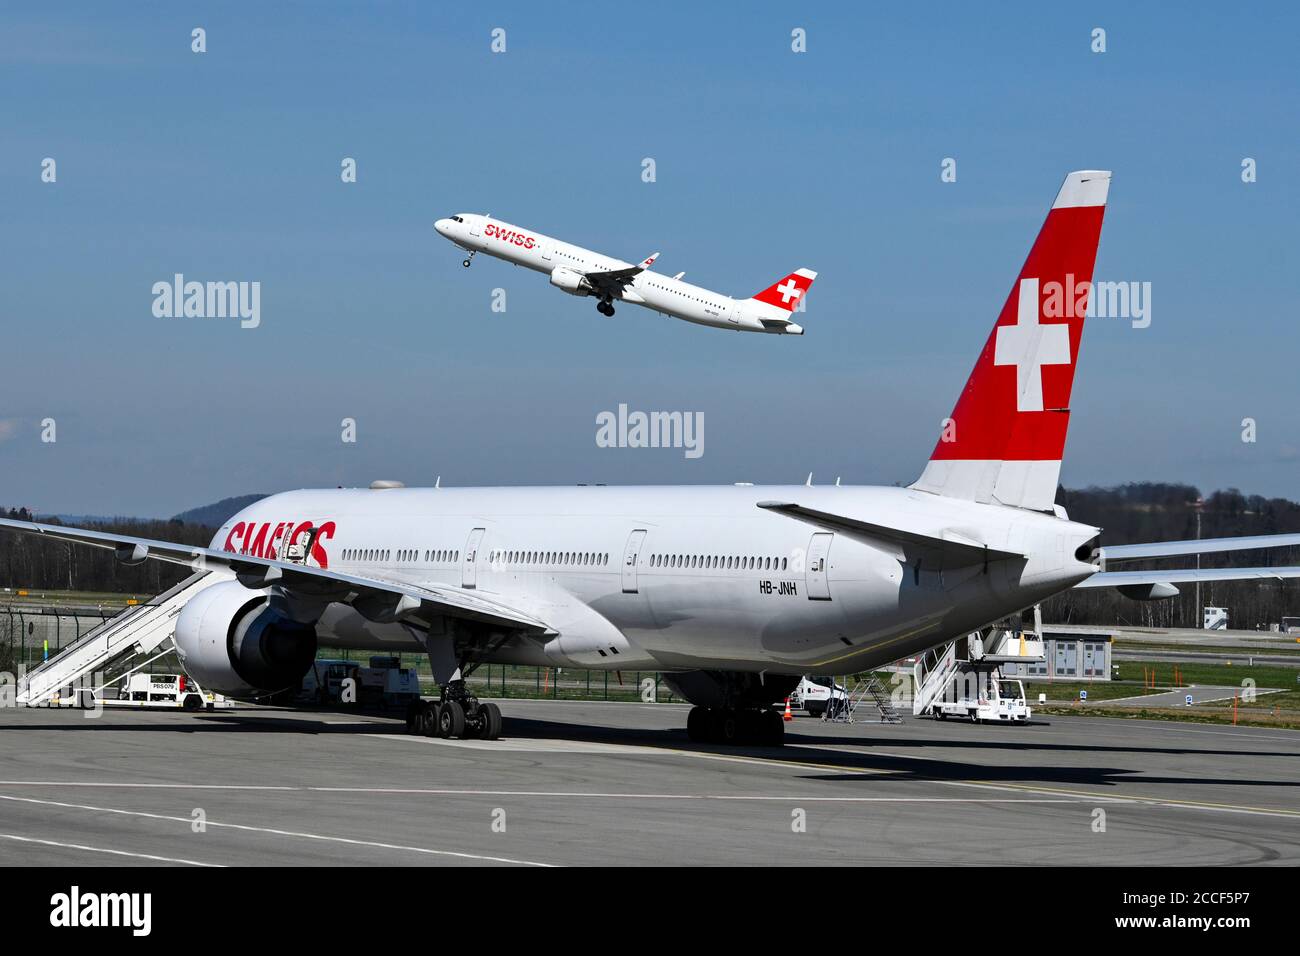 Flugzeug Schweizer Airbus A321-200, HB-IOO beim Start, vo. Swiss Boeing 777-300, HB-JNH, am Boden, Zürich Kloten, Schweiz Stockfoto